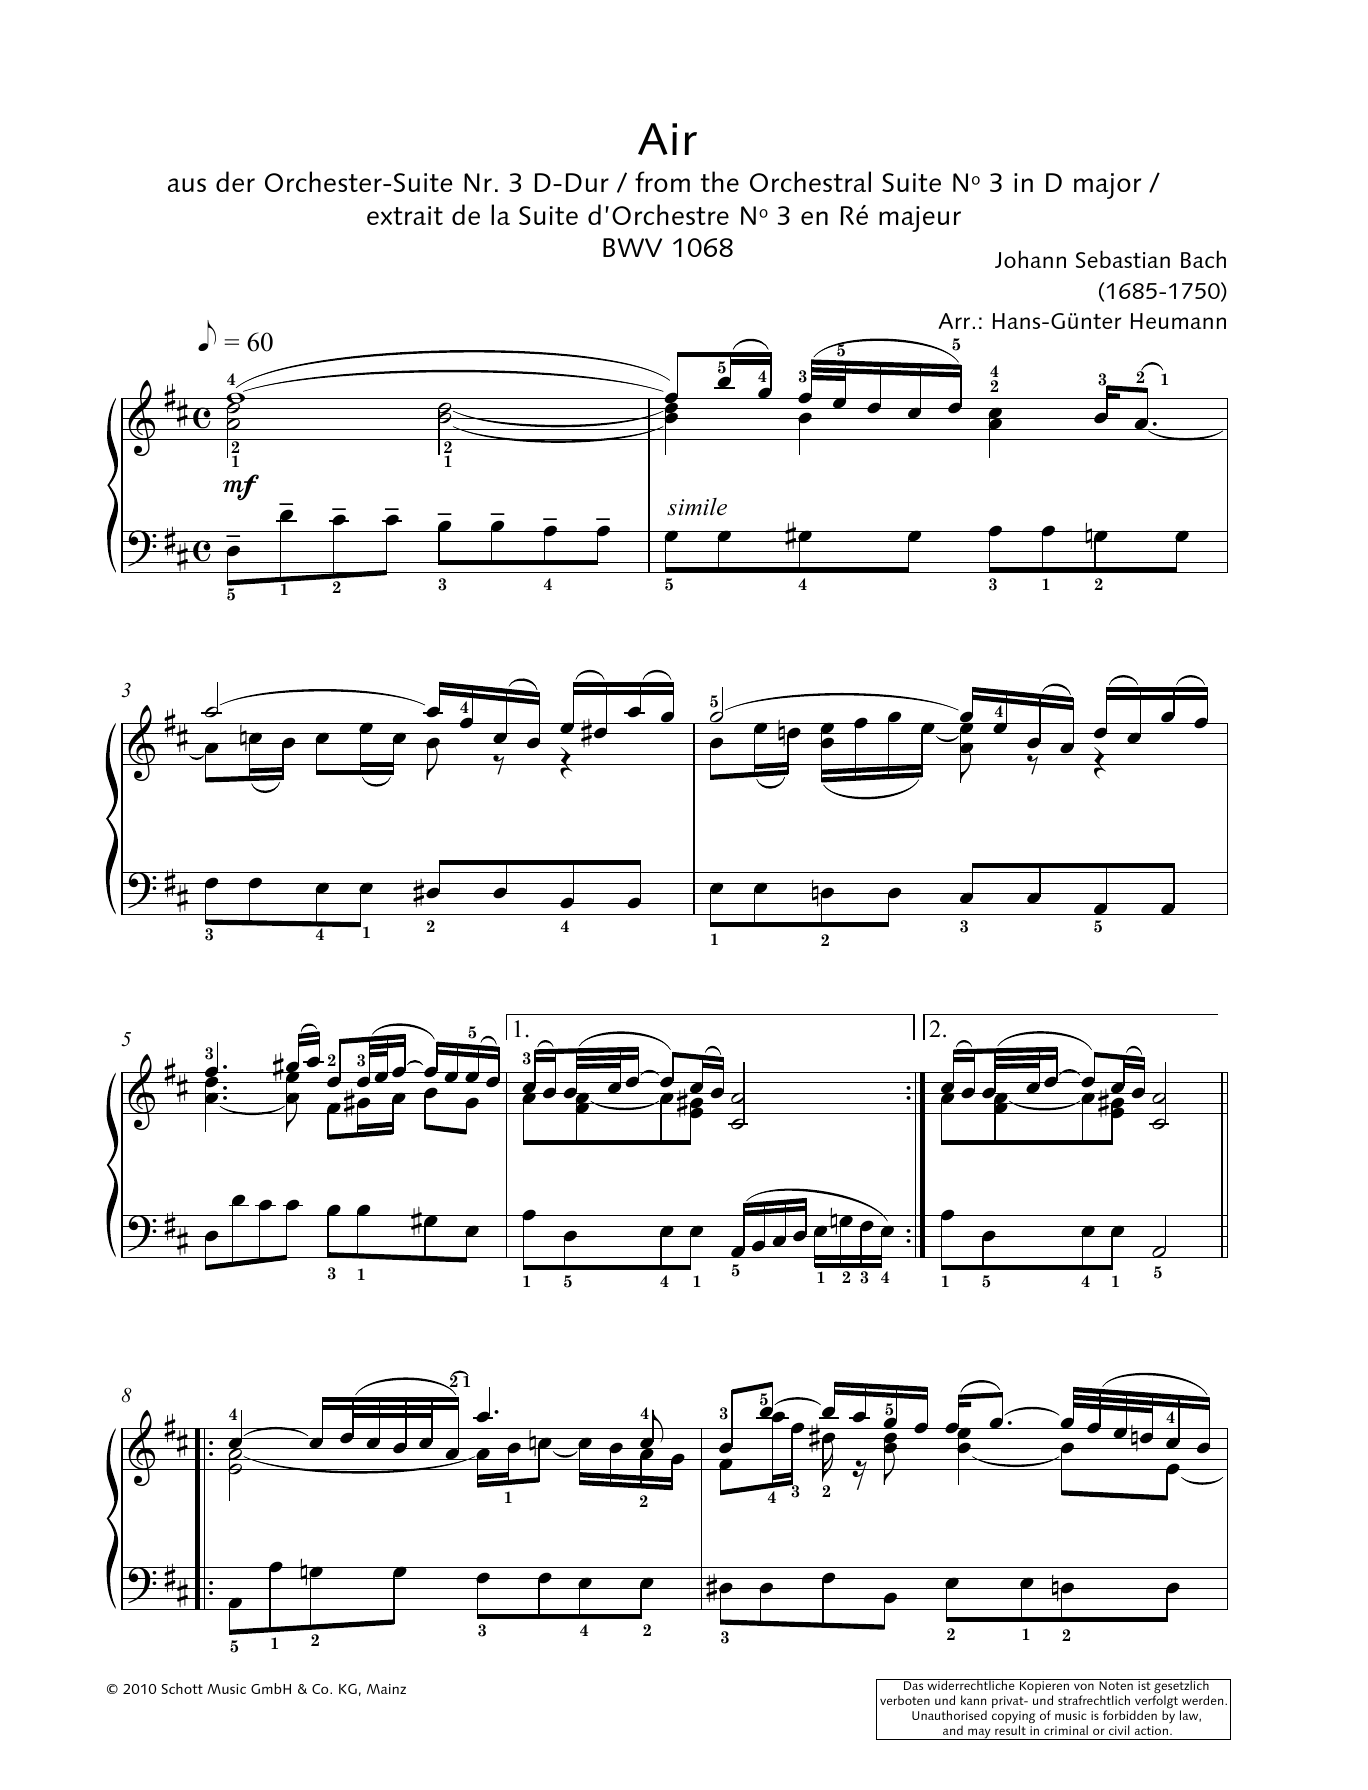 Download Johann Sebastian Bach Air Sheet Music and learn how to play SATB Choir PDF digital score in minutes